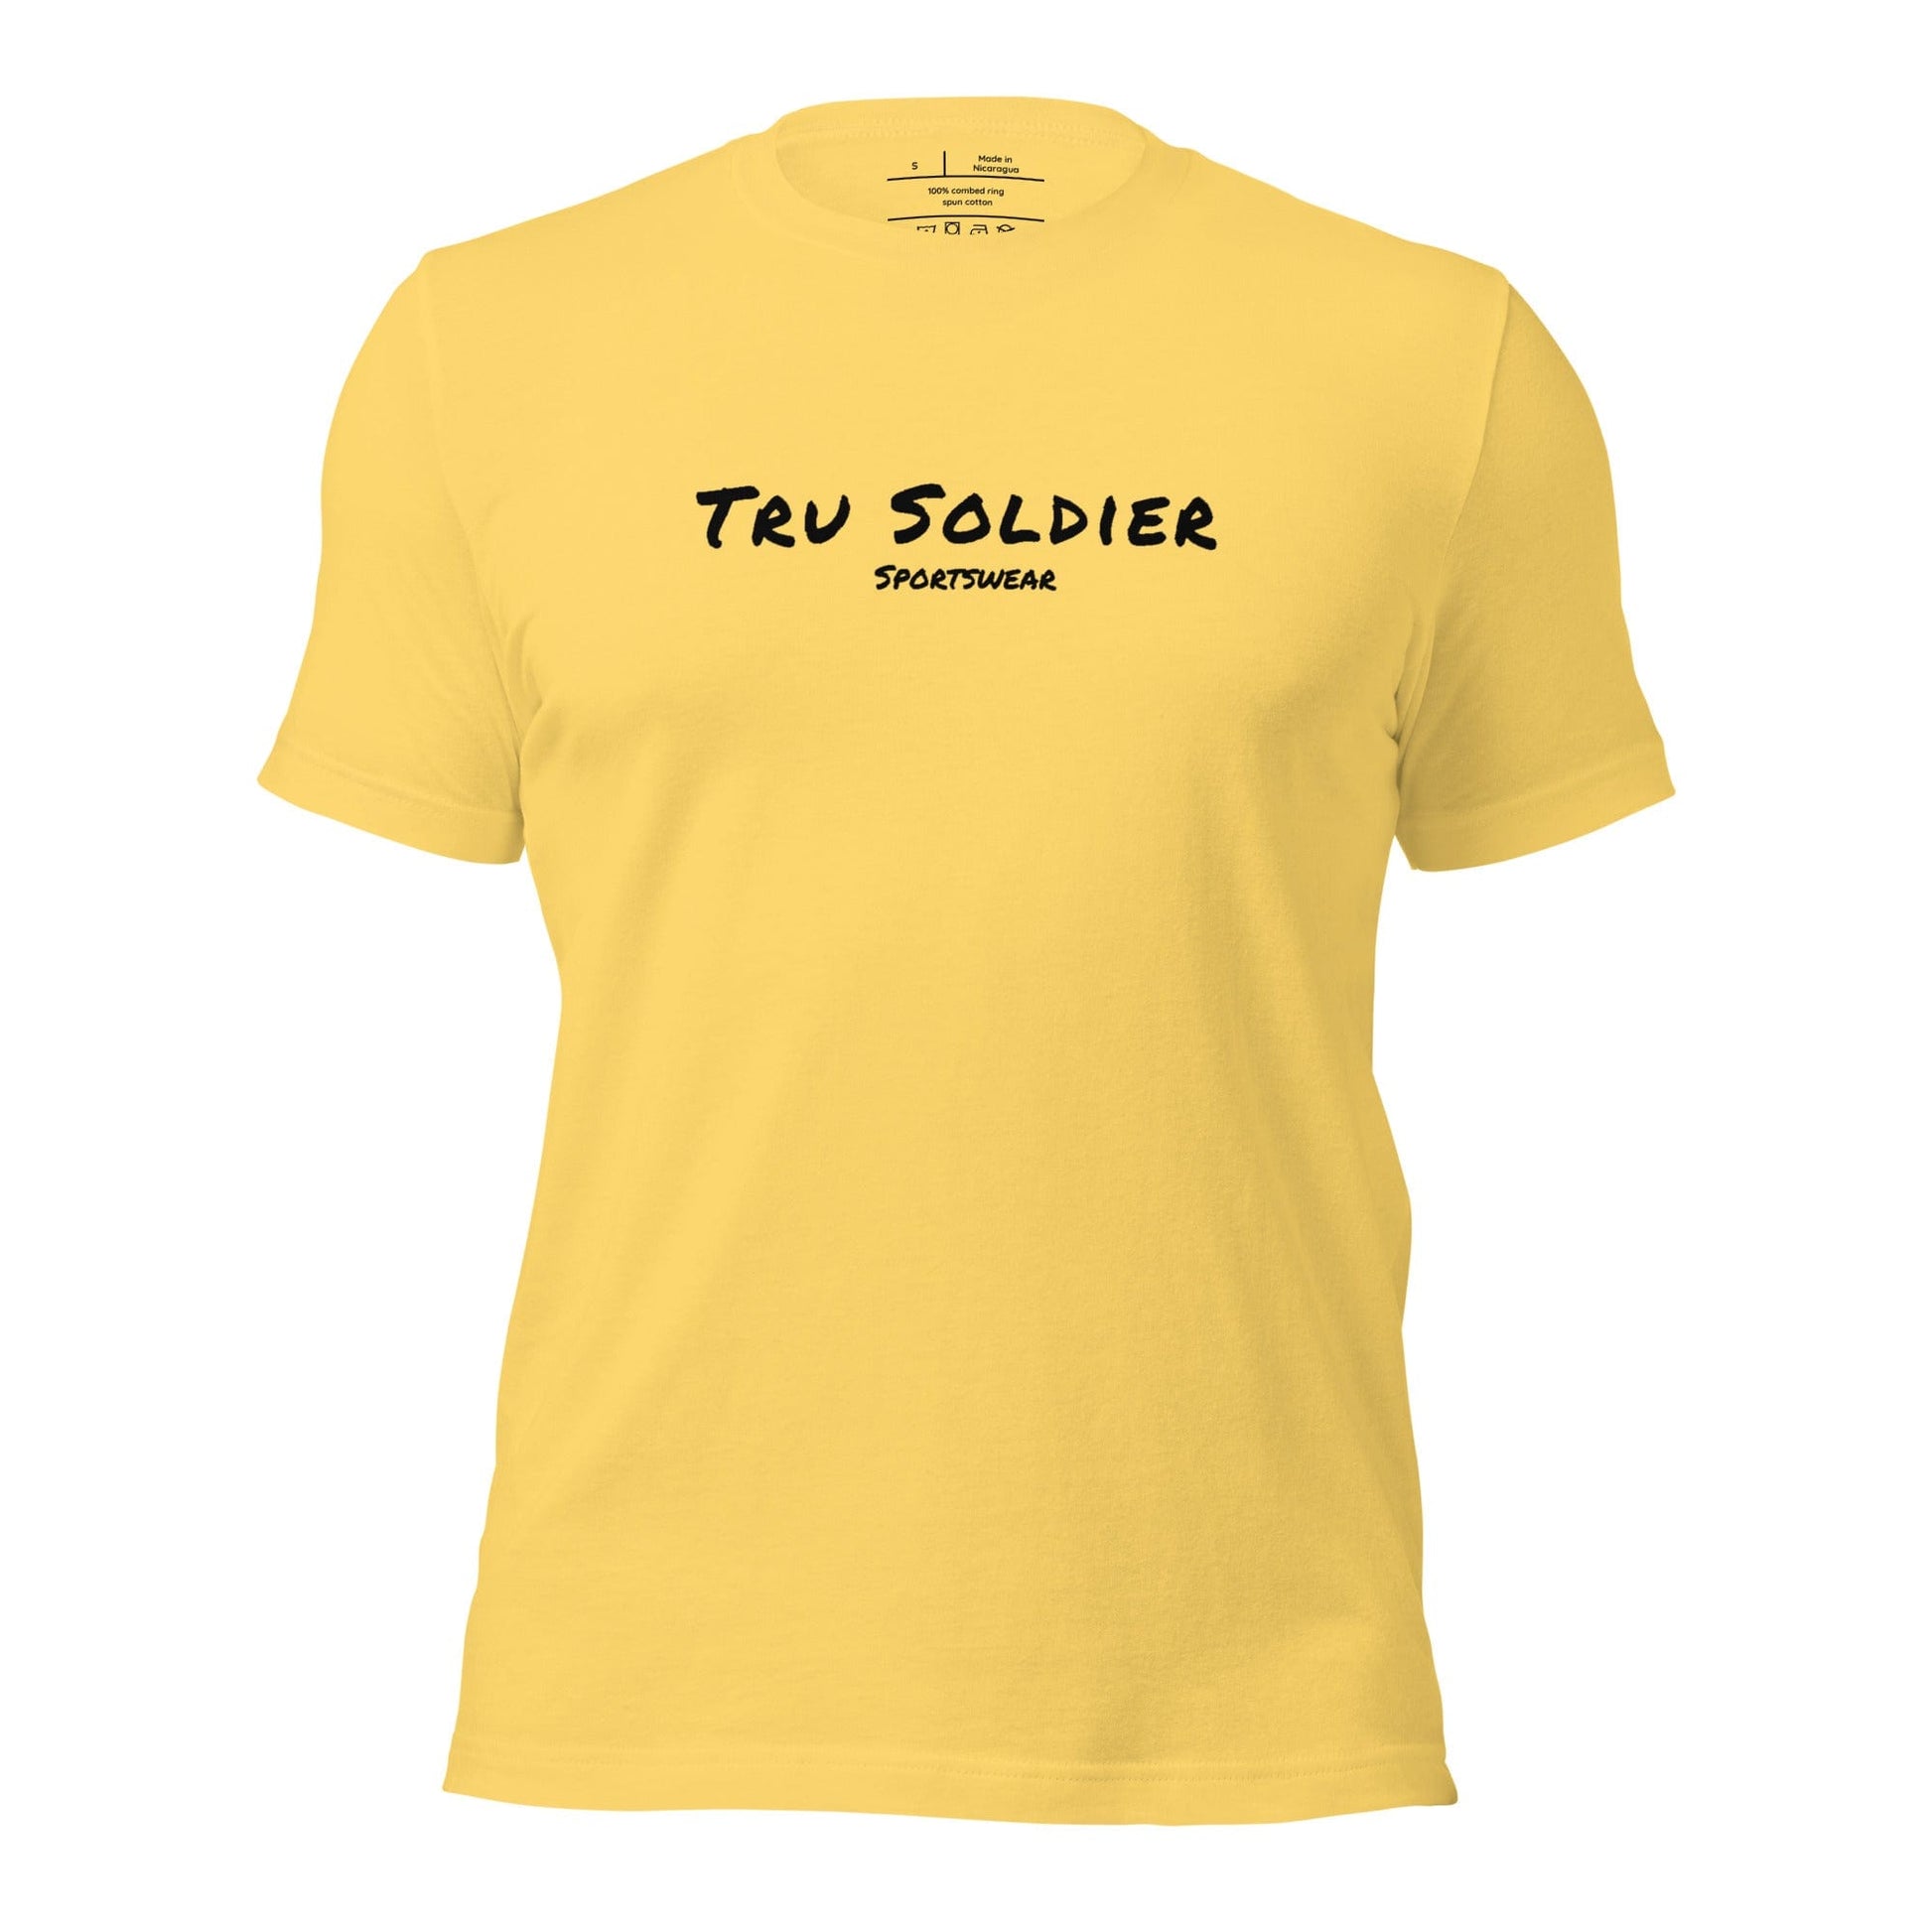 Tru Soldier Sportswear  Yellow / S Unisex t-shirt